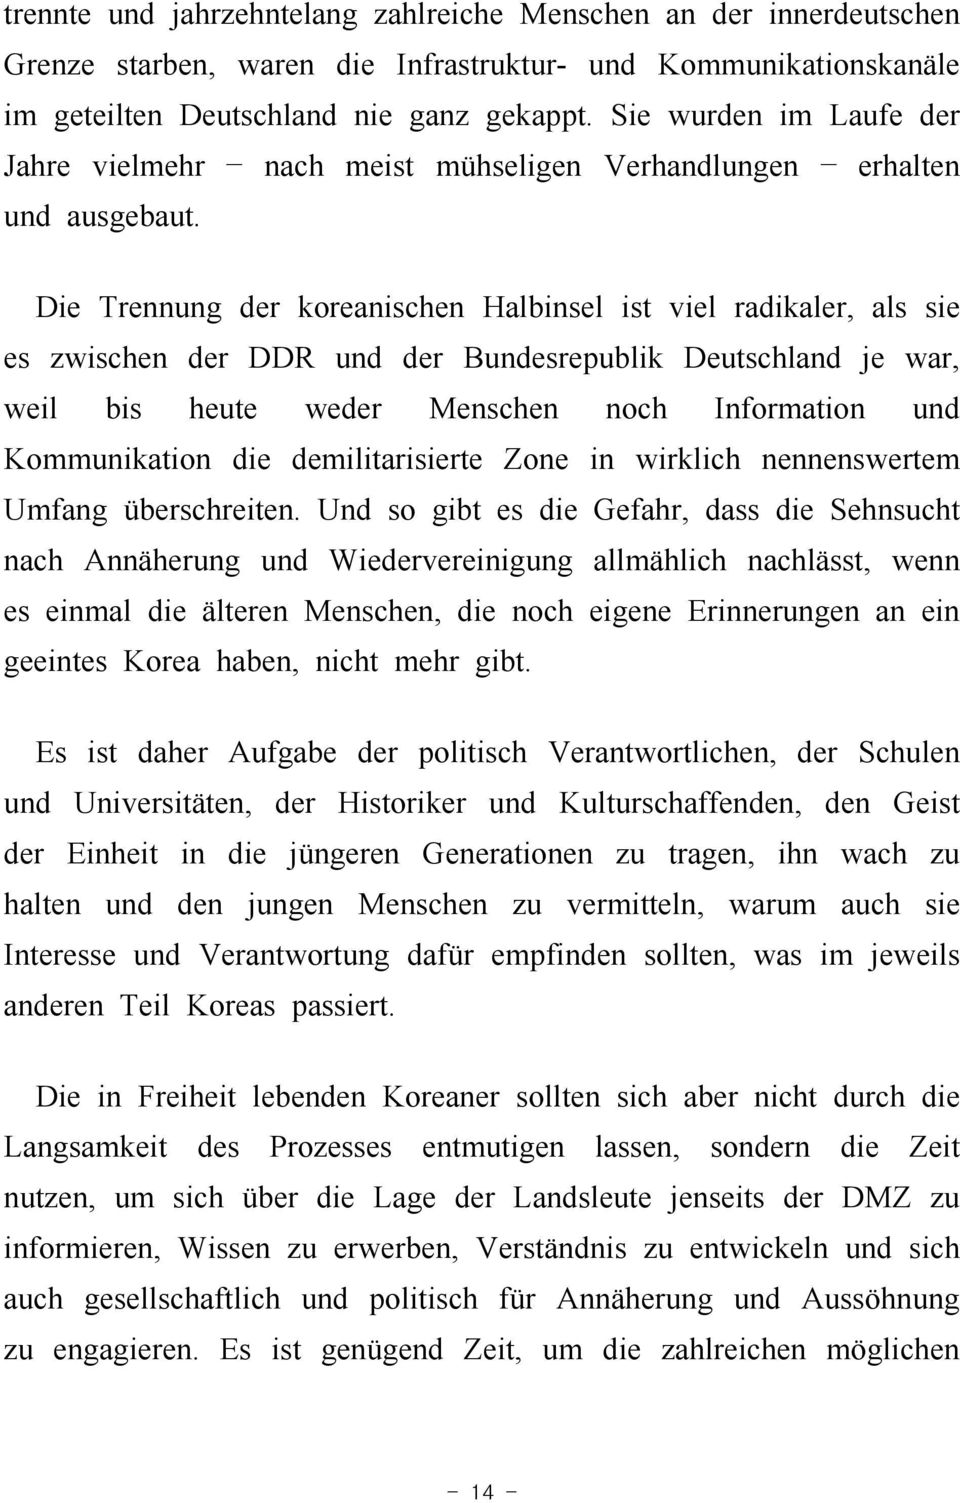 Die Trennung der koreanischen Halbinsel ist viel radikaler, als sie es zwischen der DDR und der Bundesrepublik Deutschland je war, weil bis heute weder Menschen noch Information und Kommunikation die